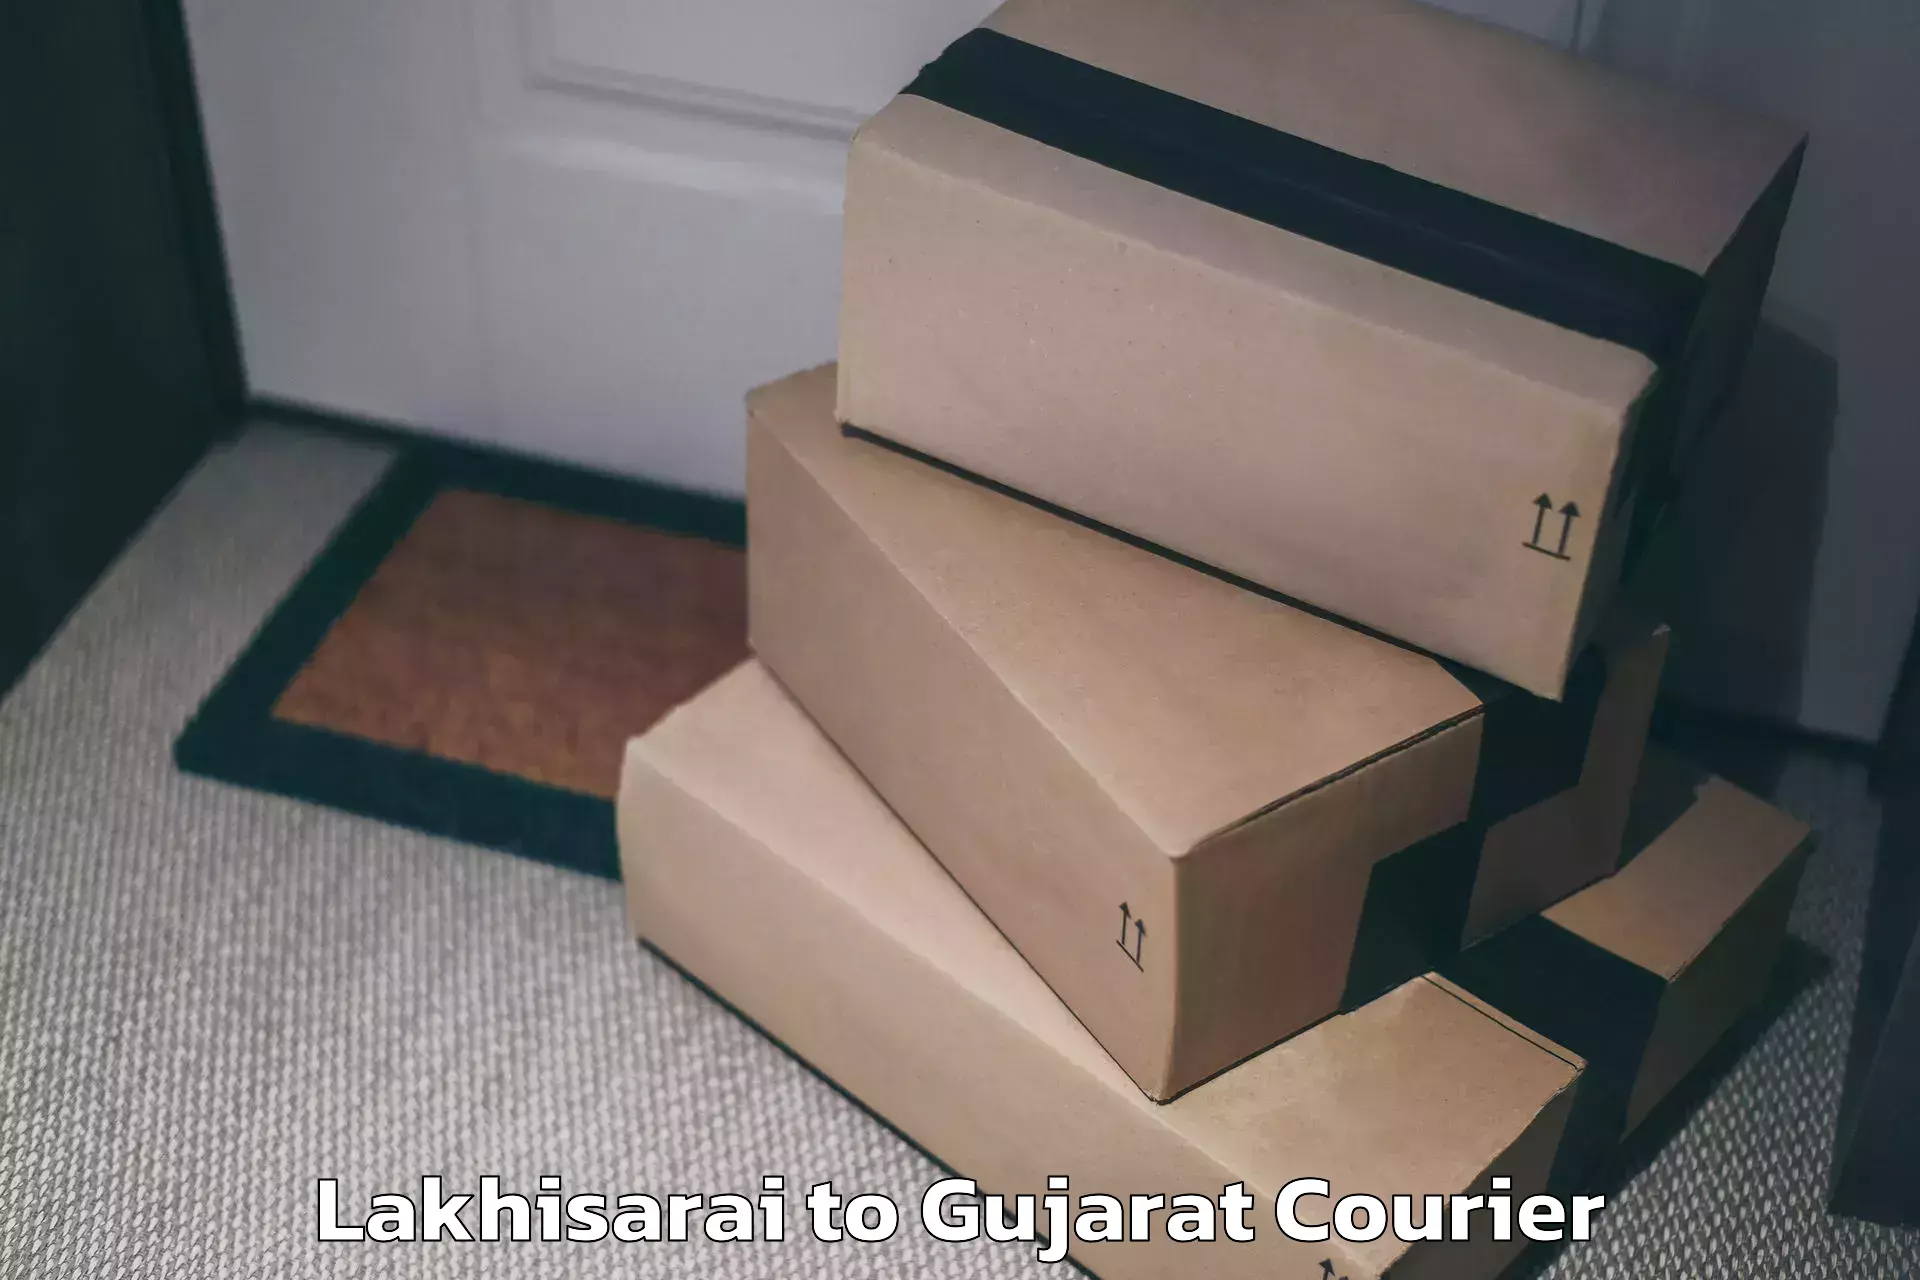 Luggage dispatch service Lakhisarai to Vapi